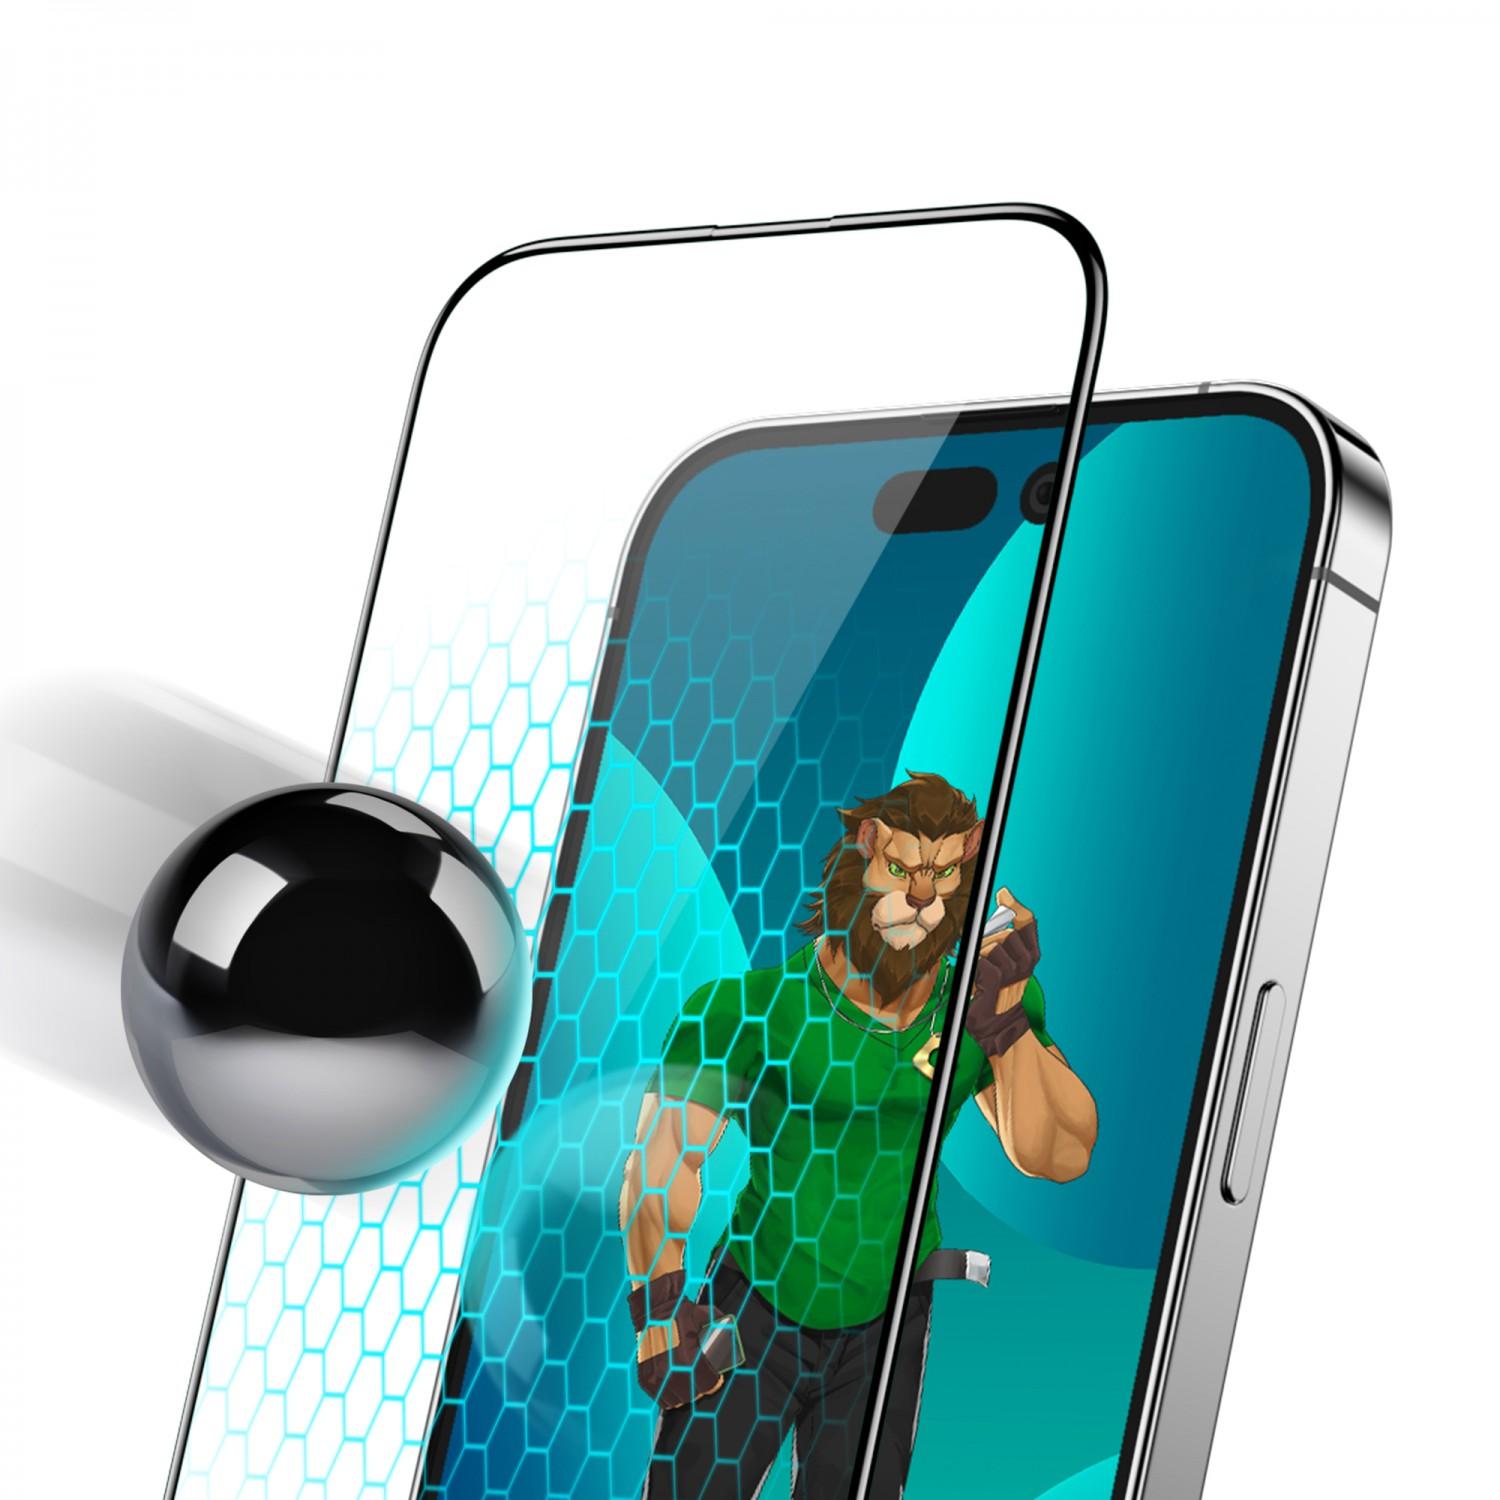 لاصقة حماية الشاشة لموبايل ايفون 14 برو ماكس زجاجية جرين Green 3D PET HD Glass Screen Protector for iPhone 14 Pro Max Clear - cG9zdDoxMzc5NzI2